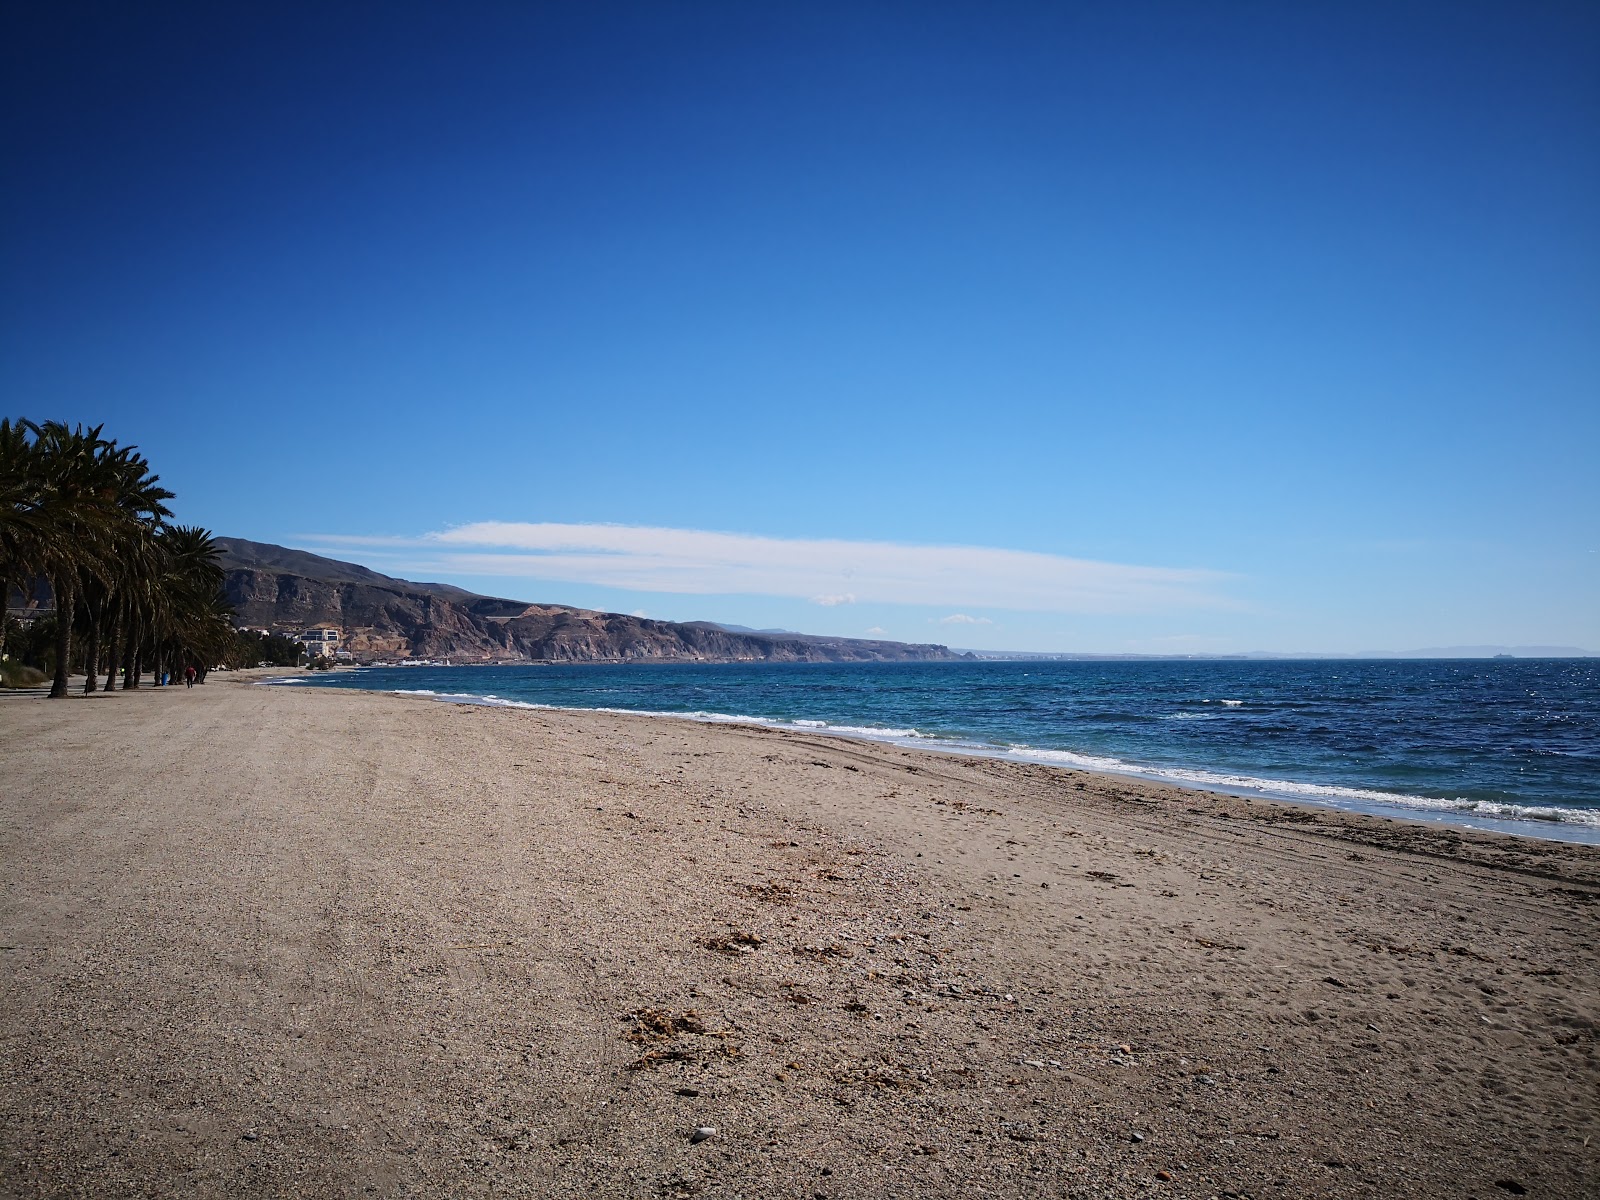 Playa los Bajos'in fotoğrafı hafif ince çakıl taş yüzey ile